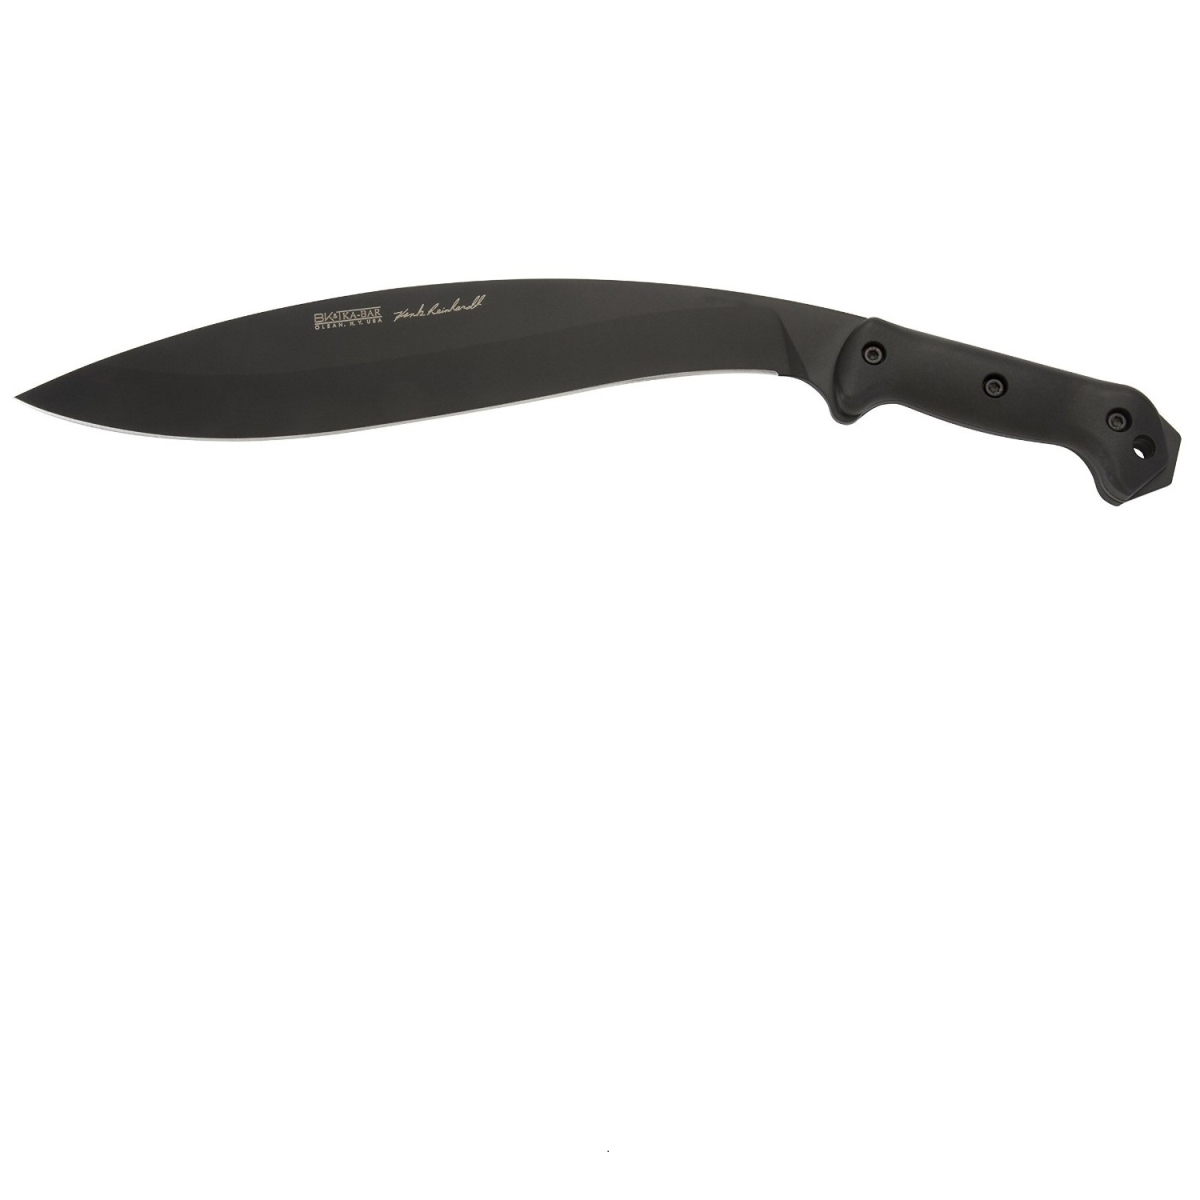 Ka-bar 4010970 Becker - Reinhardt Kukri Steel Blade Machete Knife